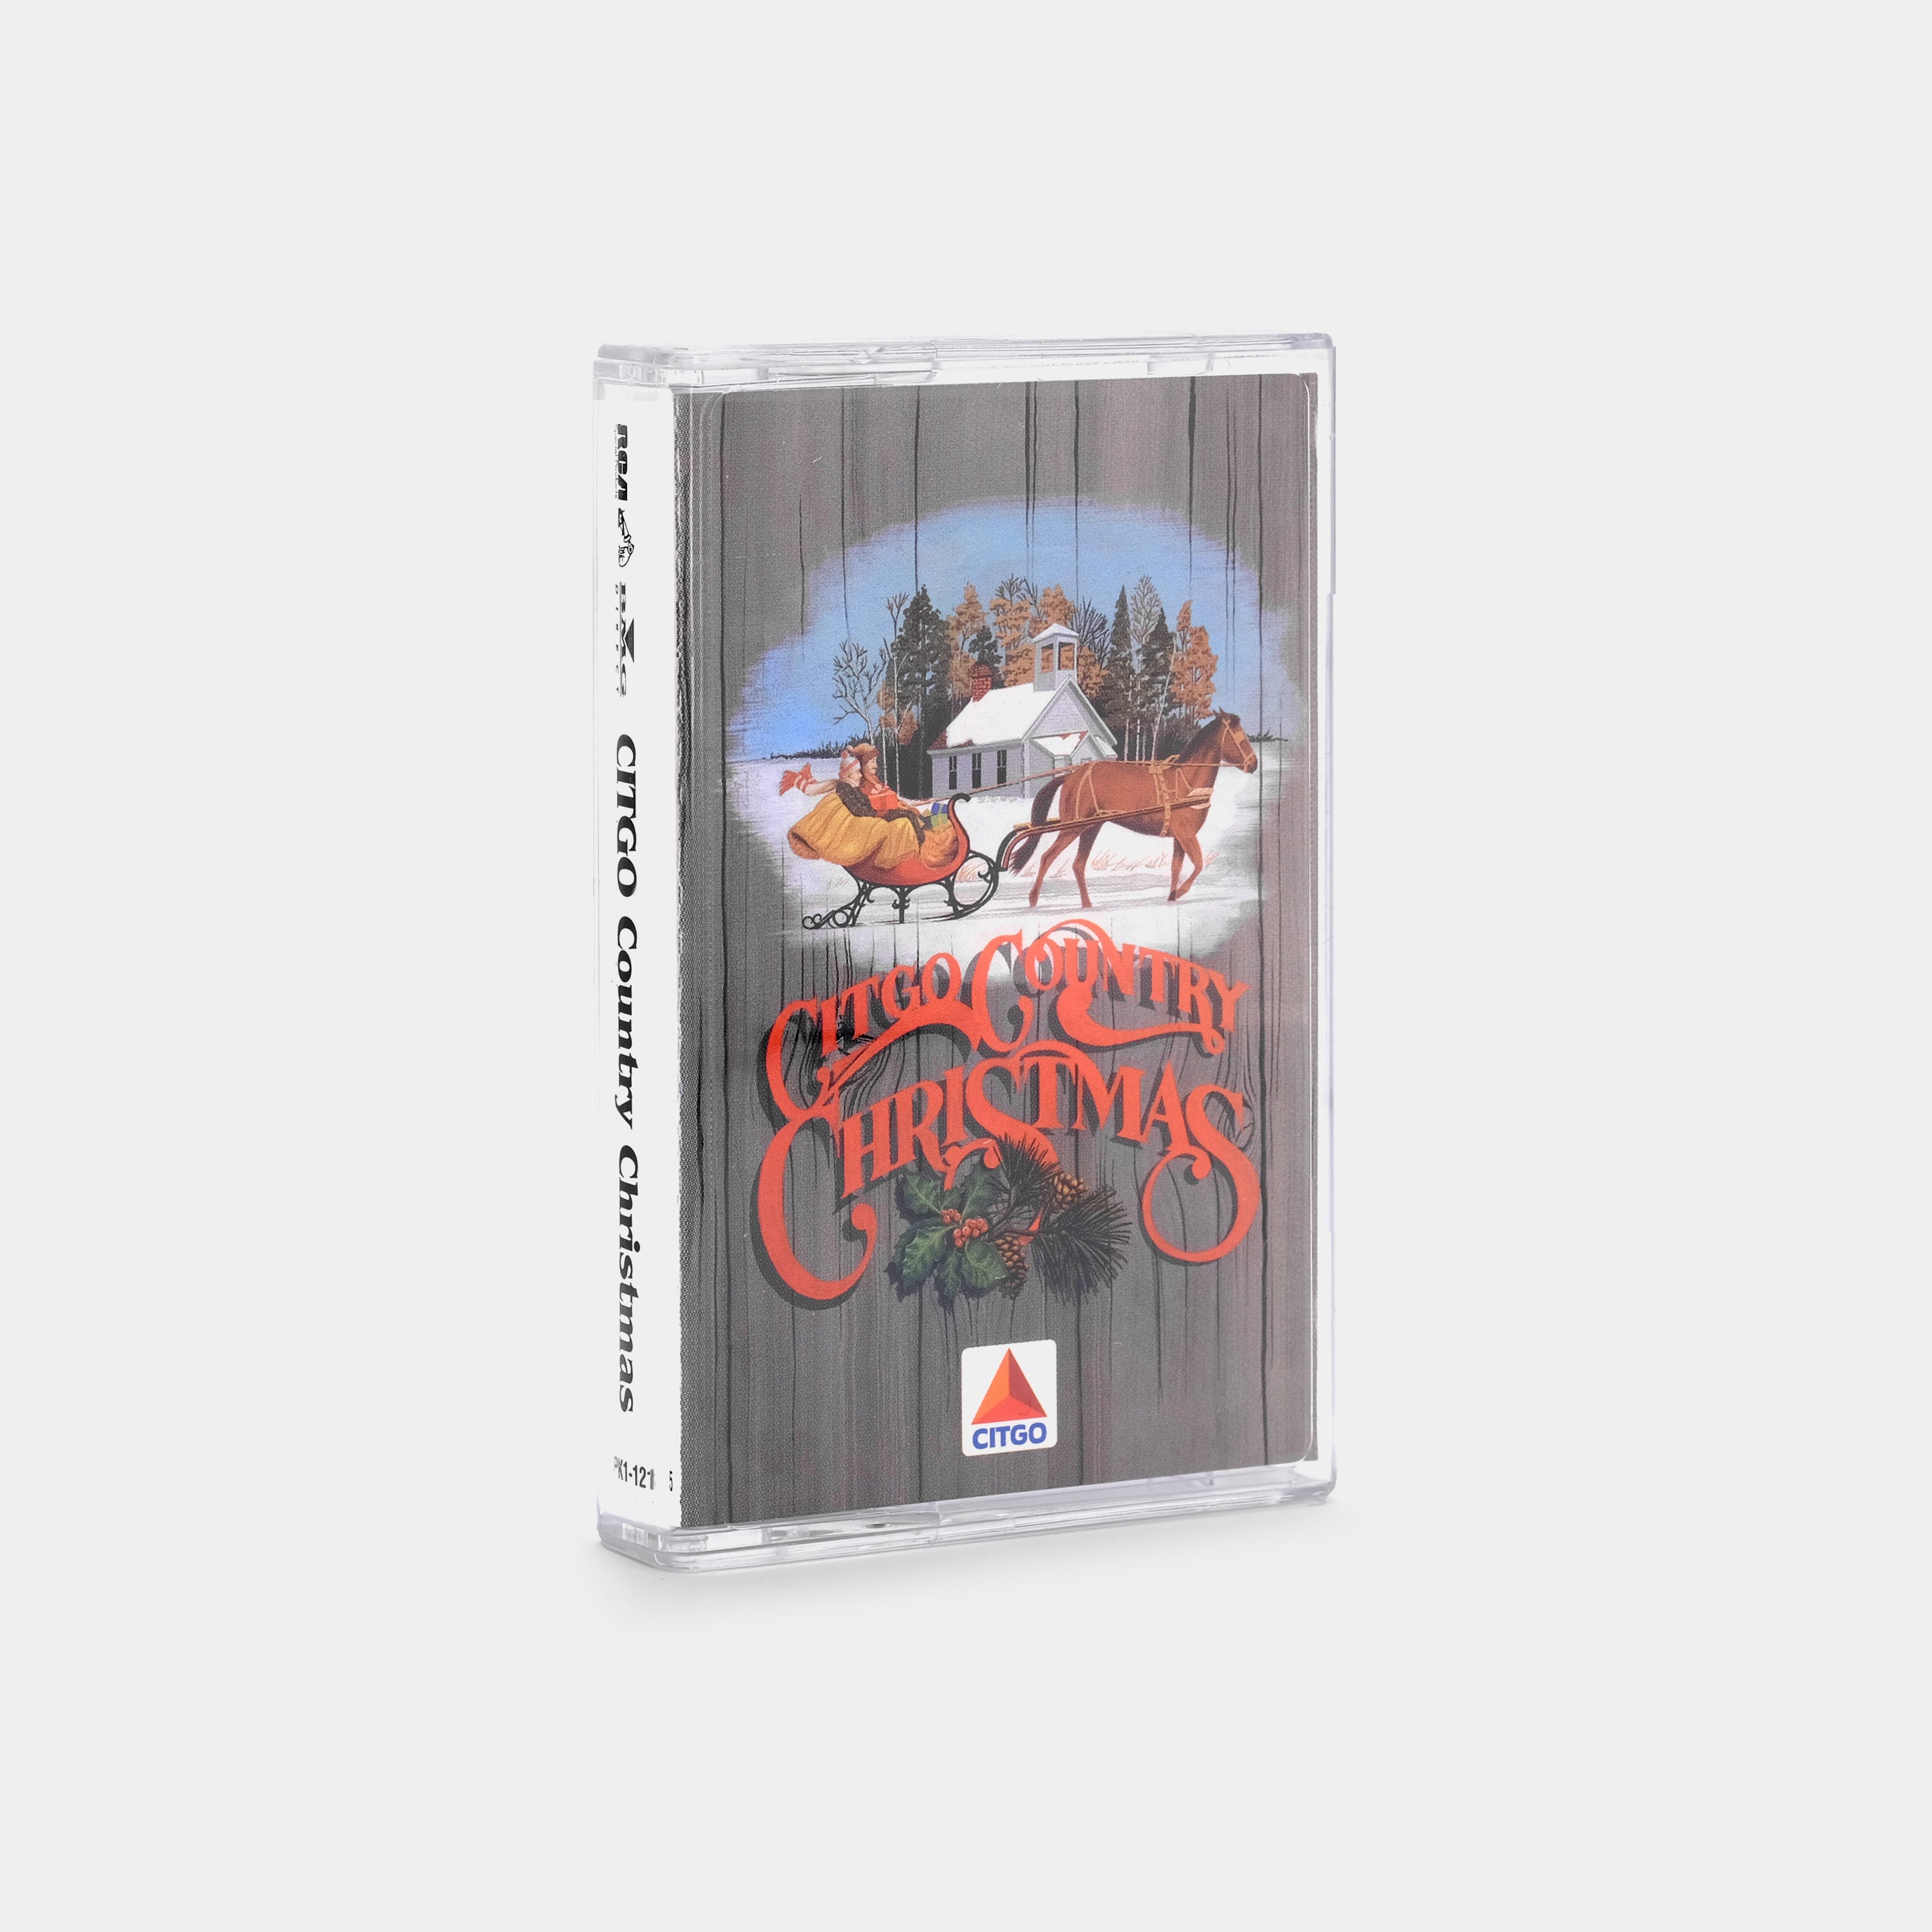 Citgo Country Christmas Cassette Tape